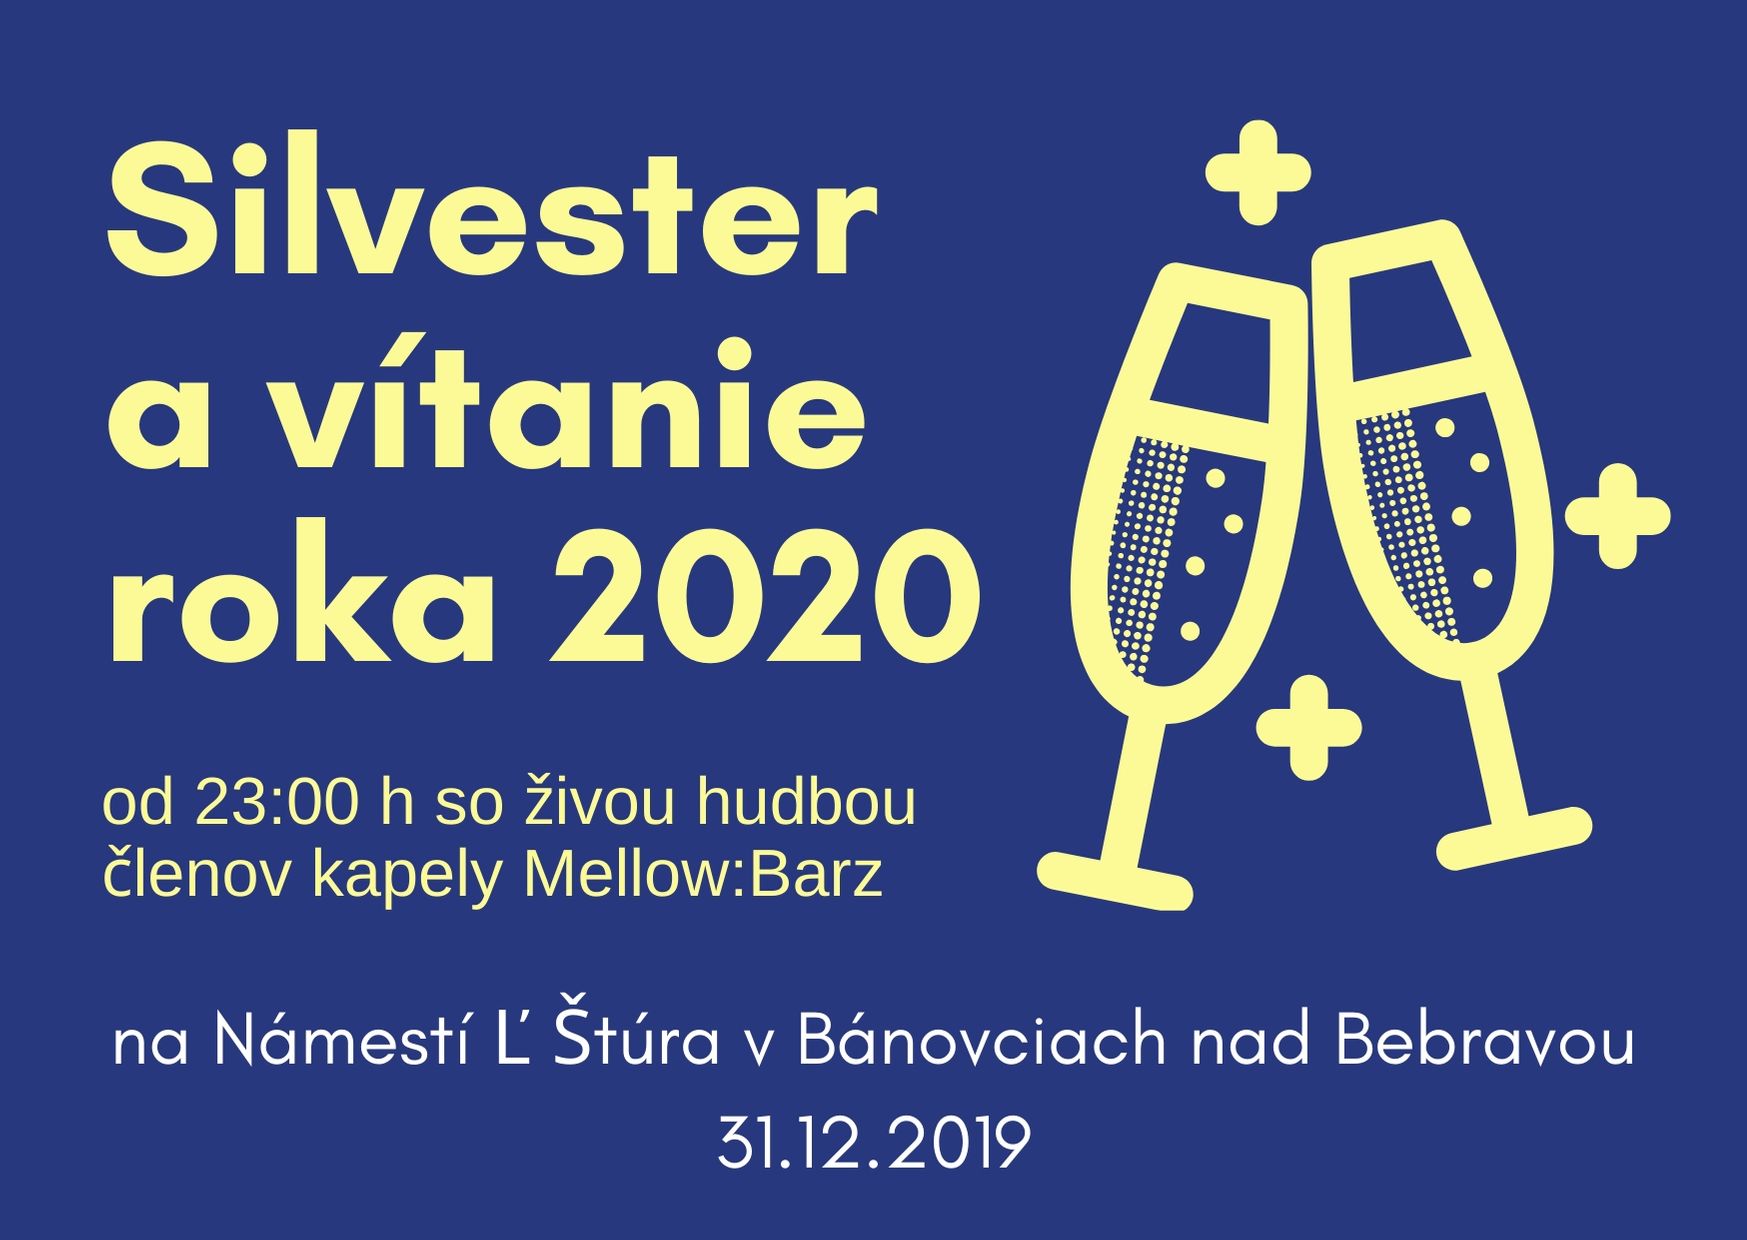 Silvester a vtanie roka 2020 Bnovce nad Bebravou